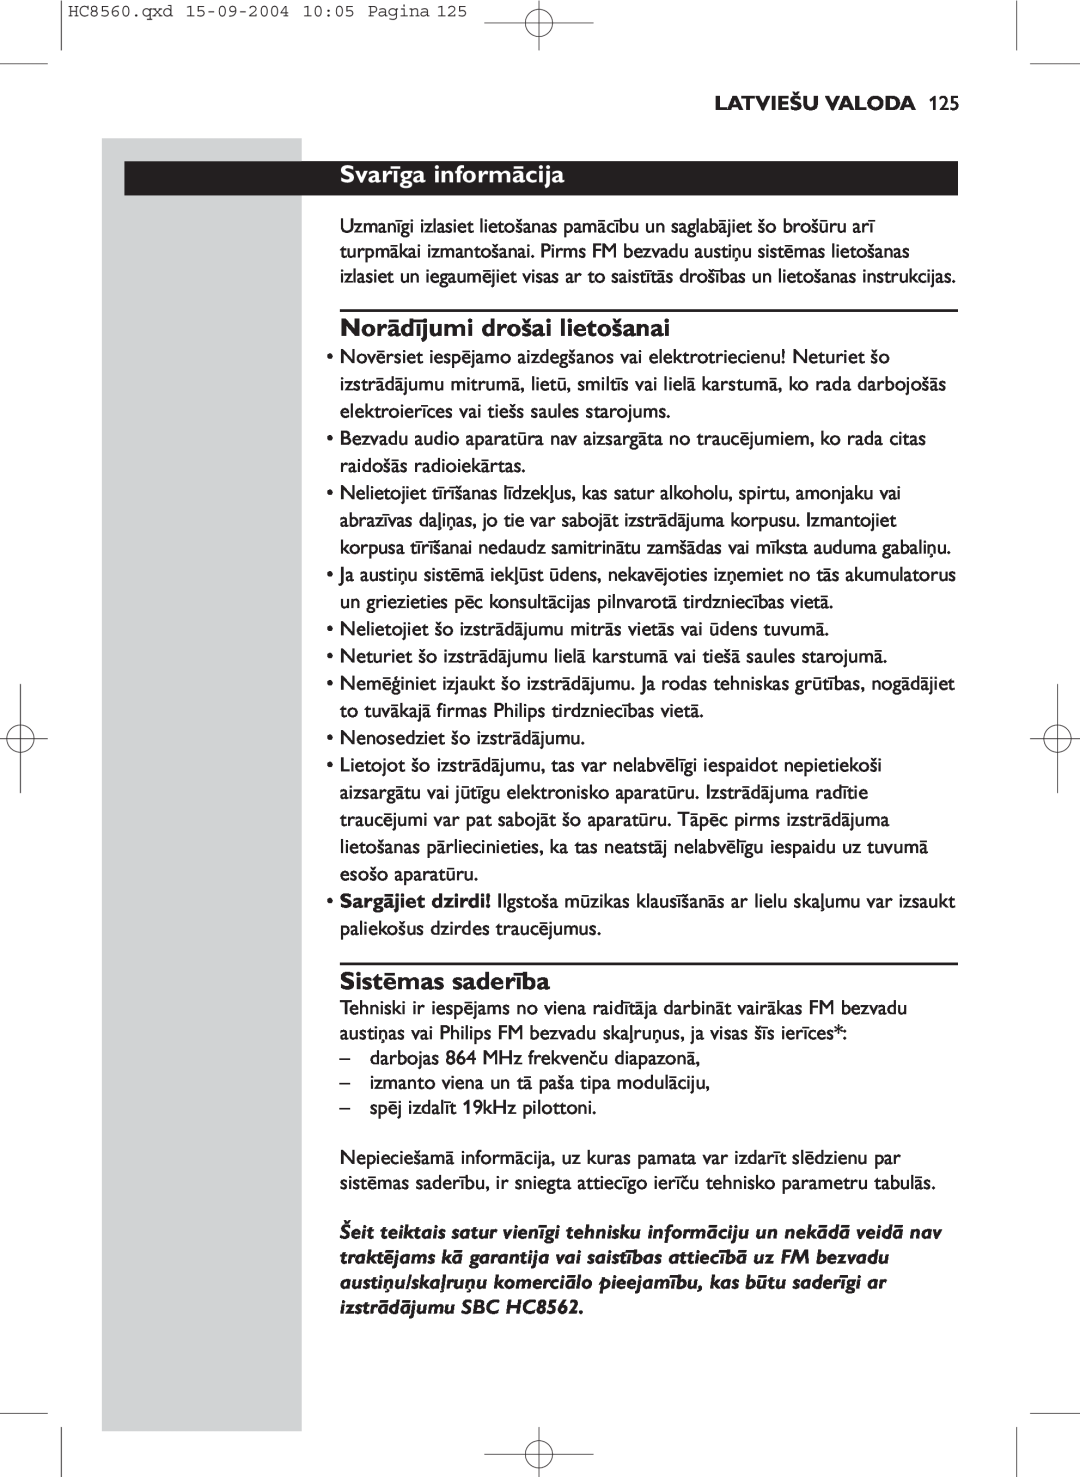 Philips HC 8560 manual Svarīga informācija, Norādījumi drošai lietošanai, Sistēmas saderība, Latviešu Valoda 